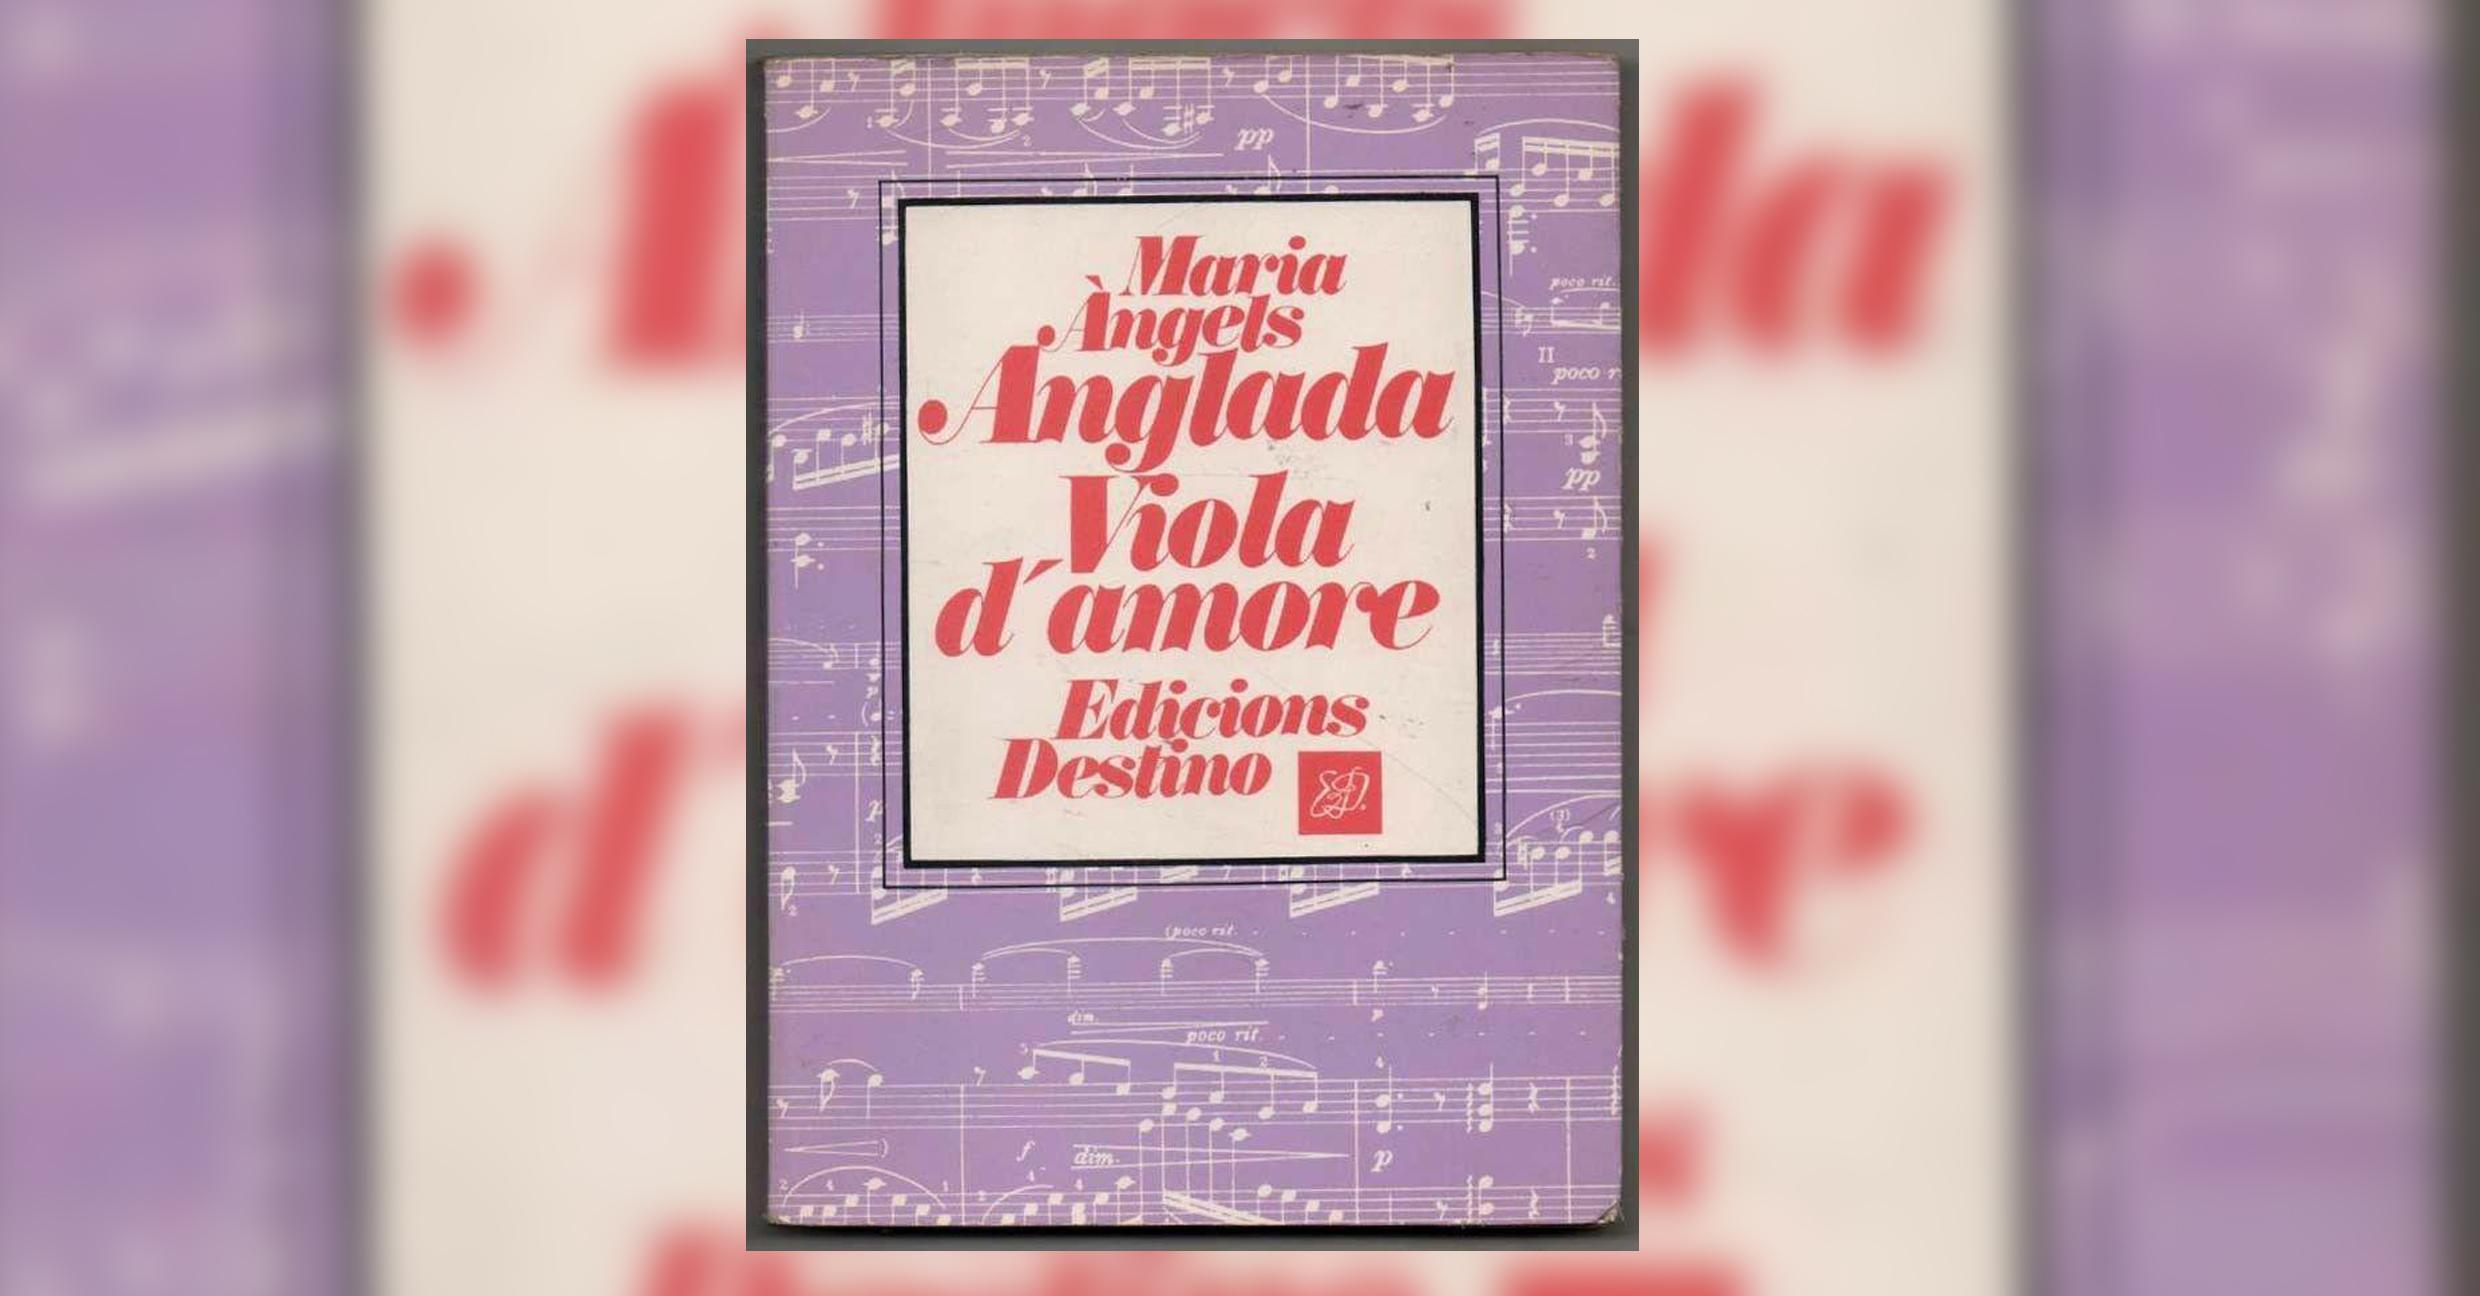 Club Viola d’amore, de M. Àngels Anglada, a càrrec d’Anna Perera - Activitat Virtual